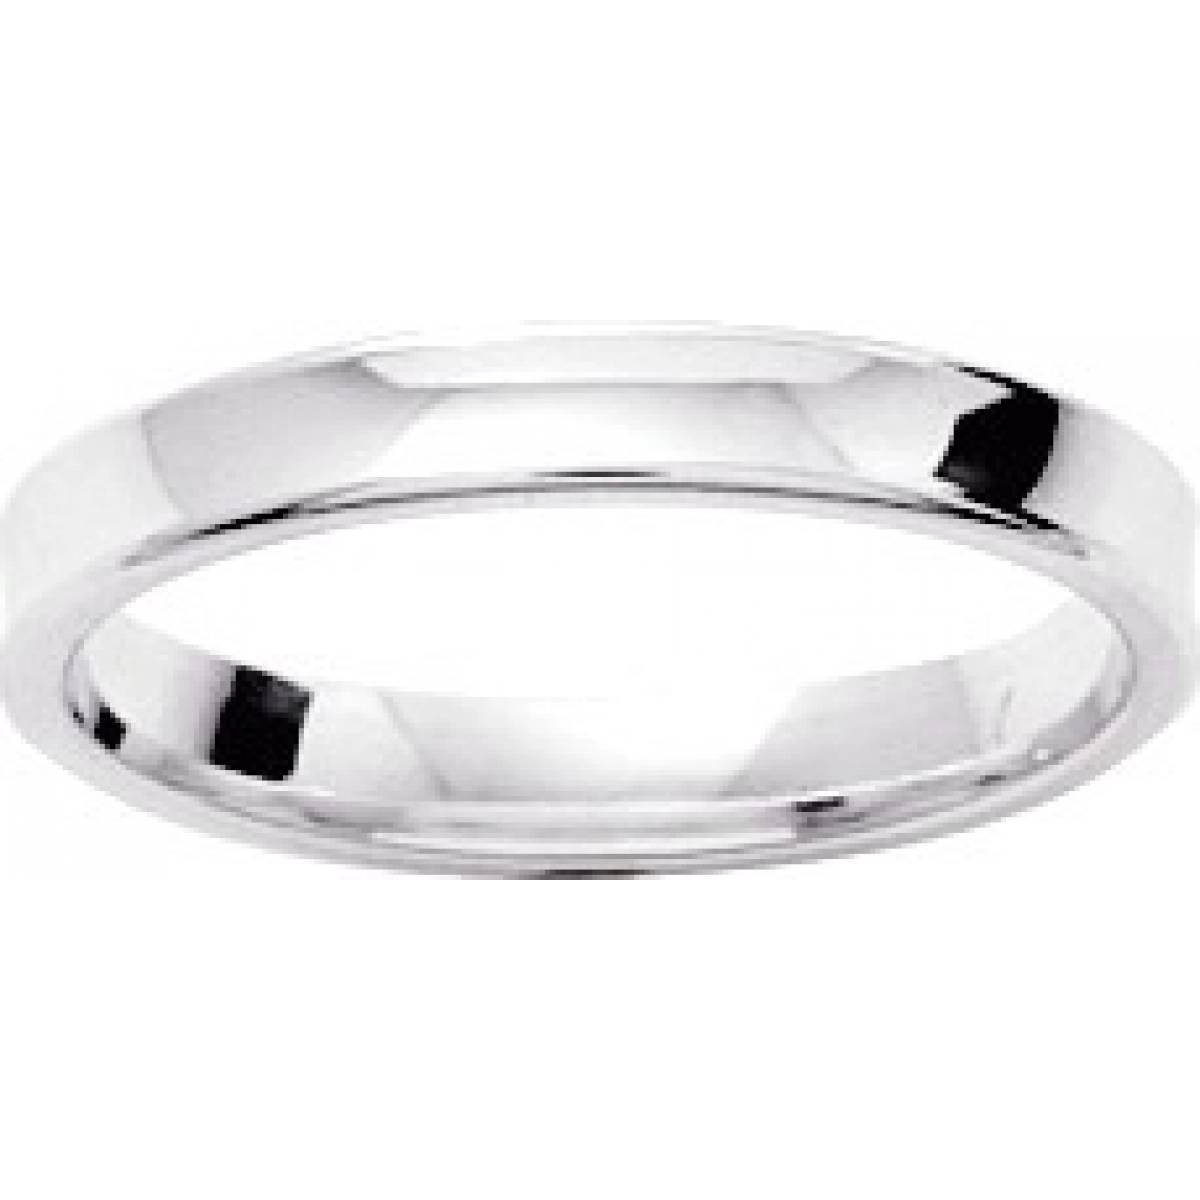 Wedding ring 3mm rh925 Silver - Size: 56  Lua Blanca  307788.16